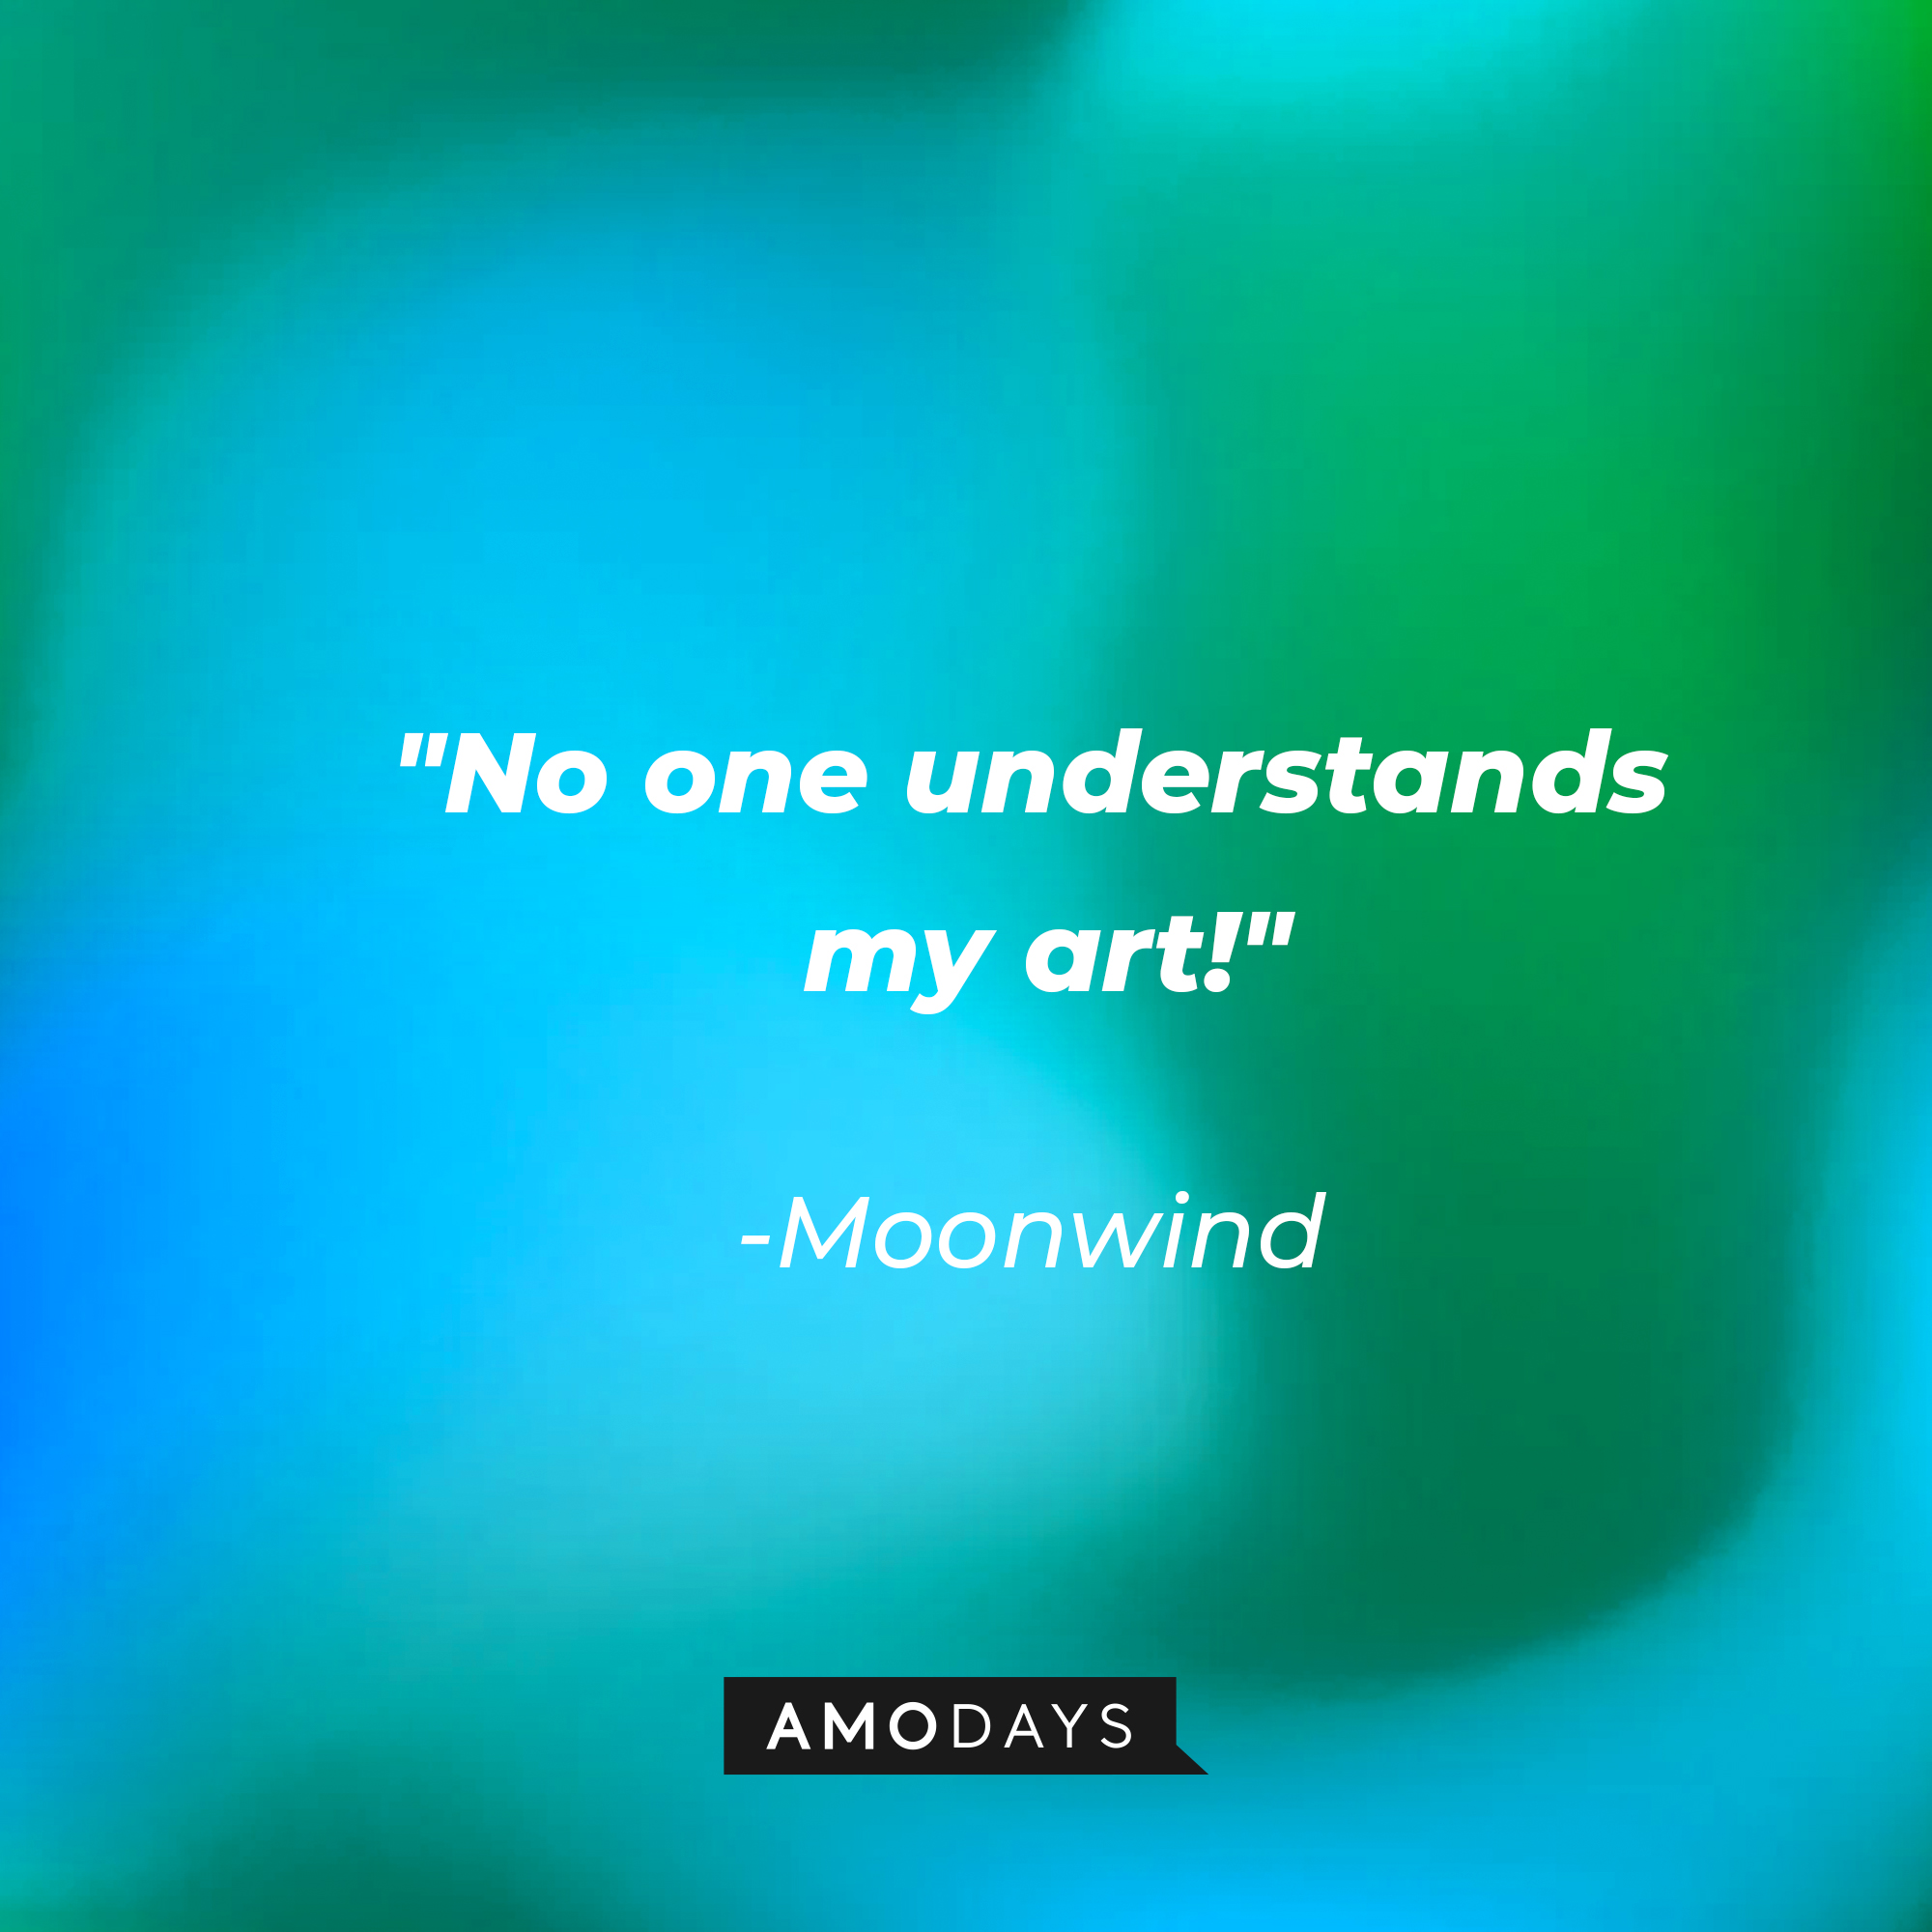 Moonwind's quote: "No one understands my art!"  | Source: youtube.com/pixar